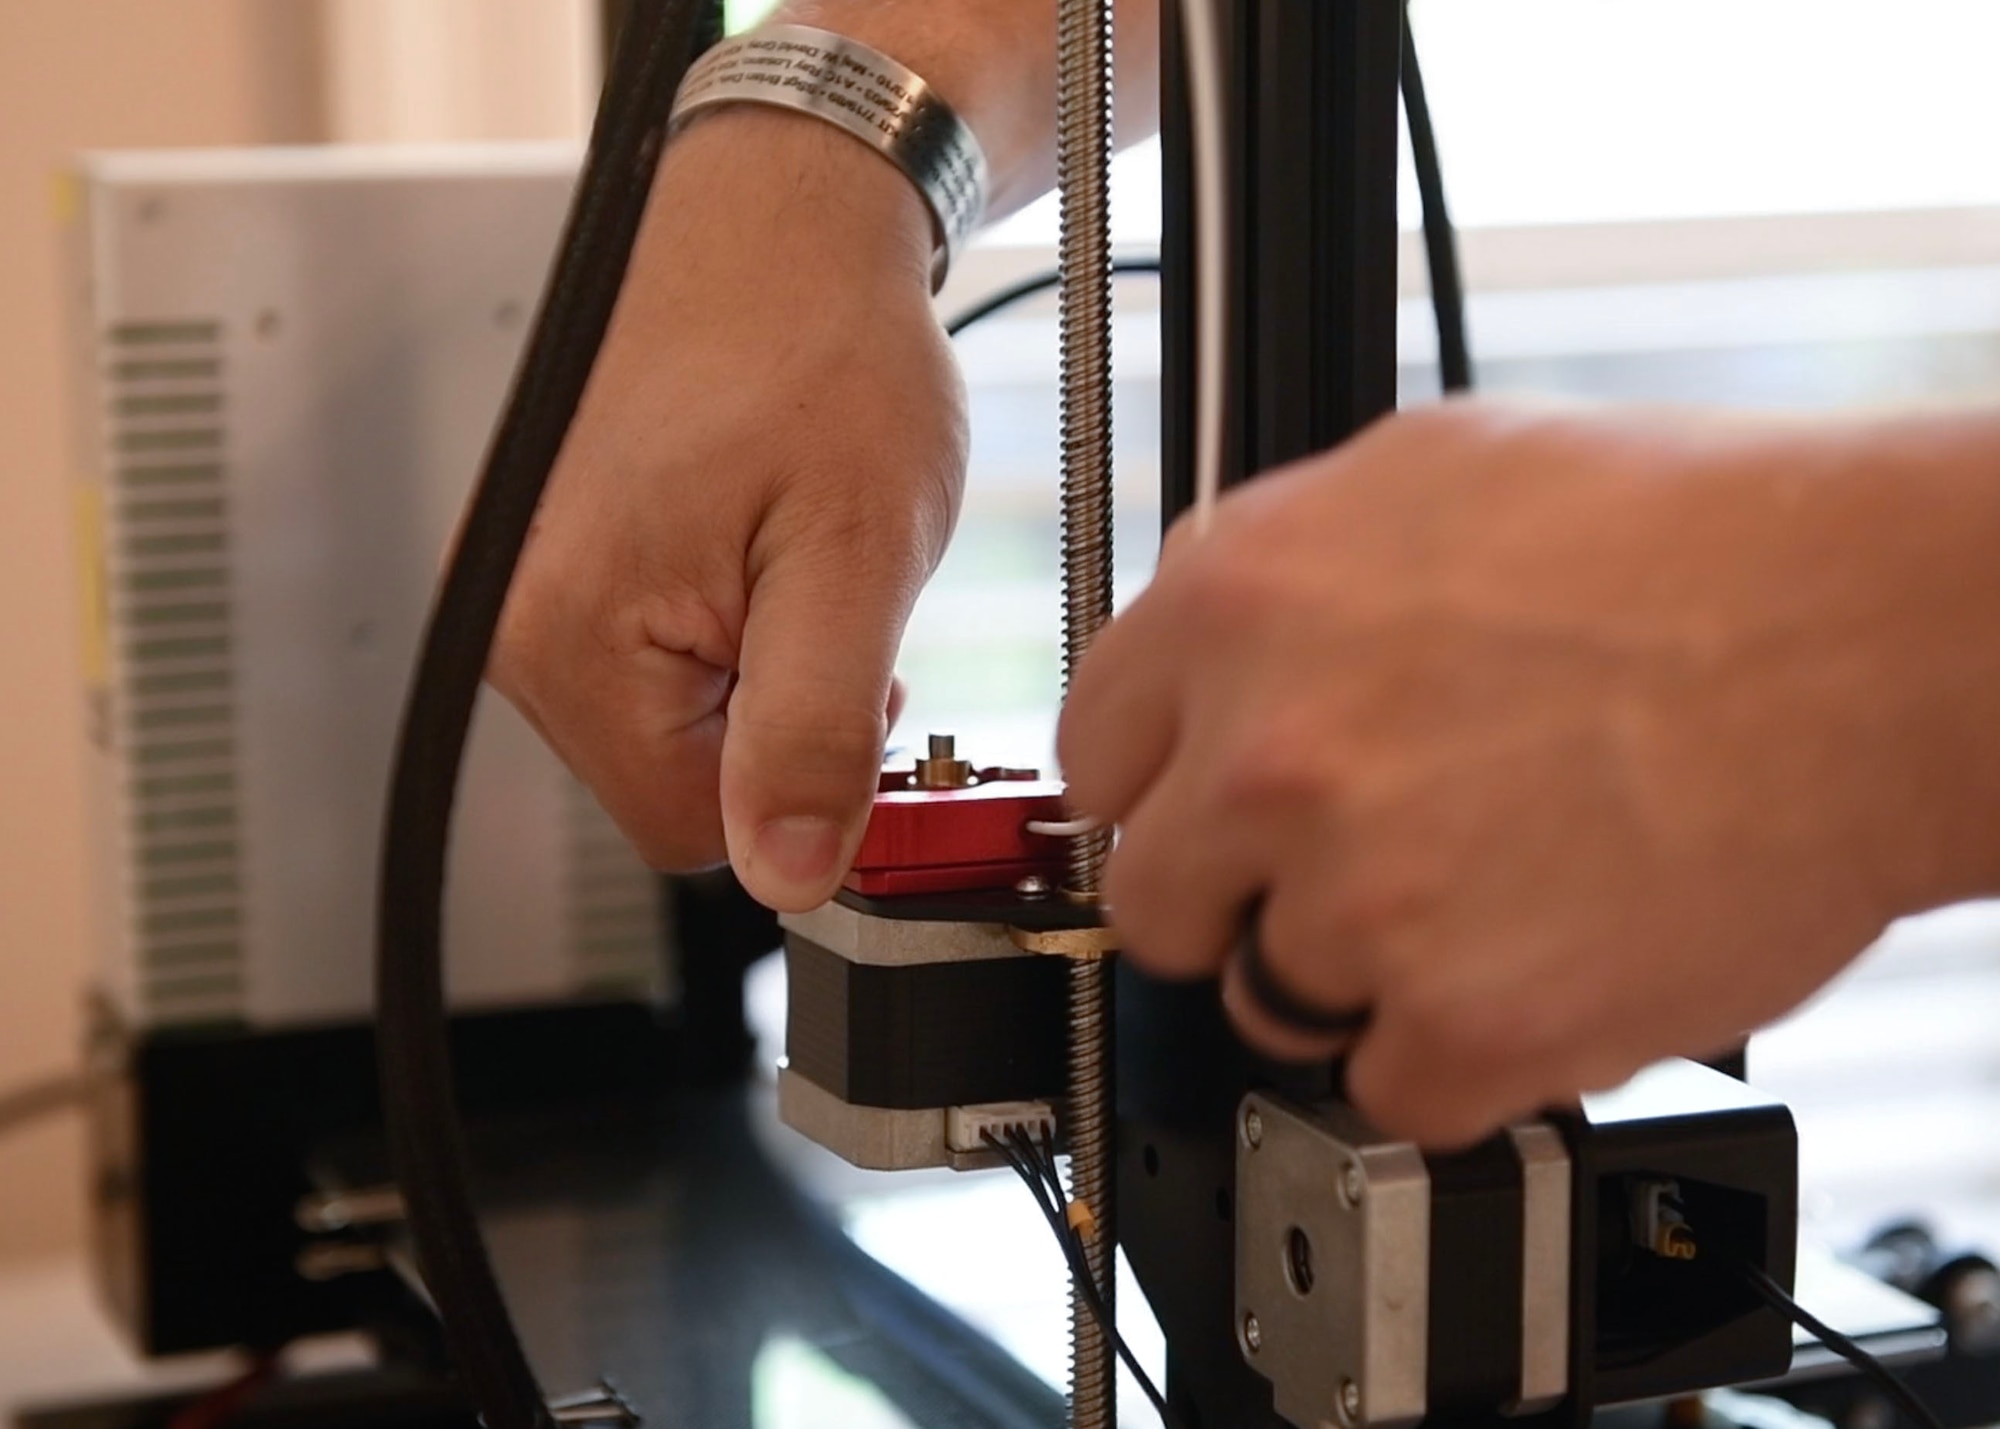 A man puts filament into a 3D printer.